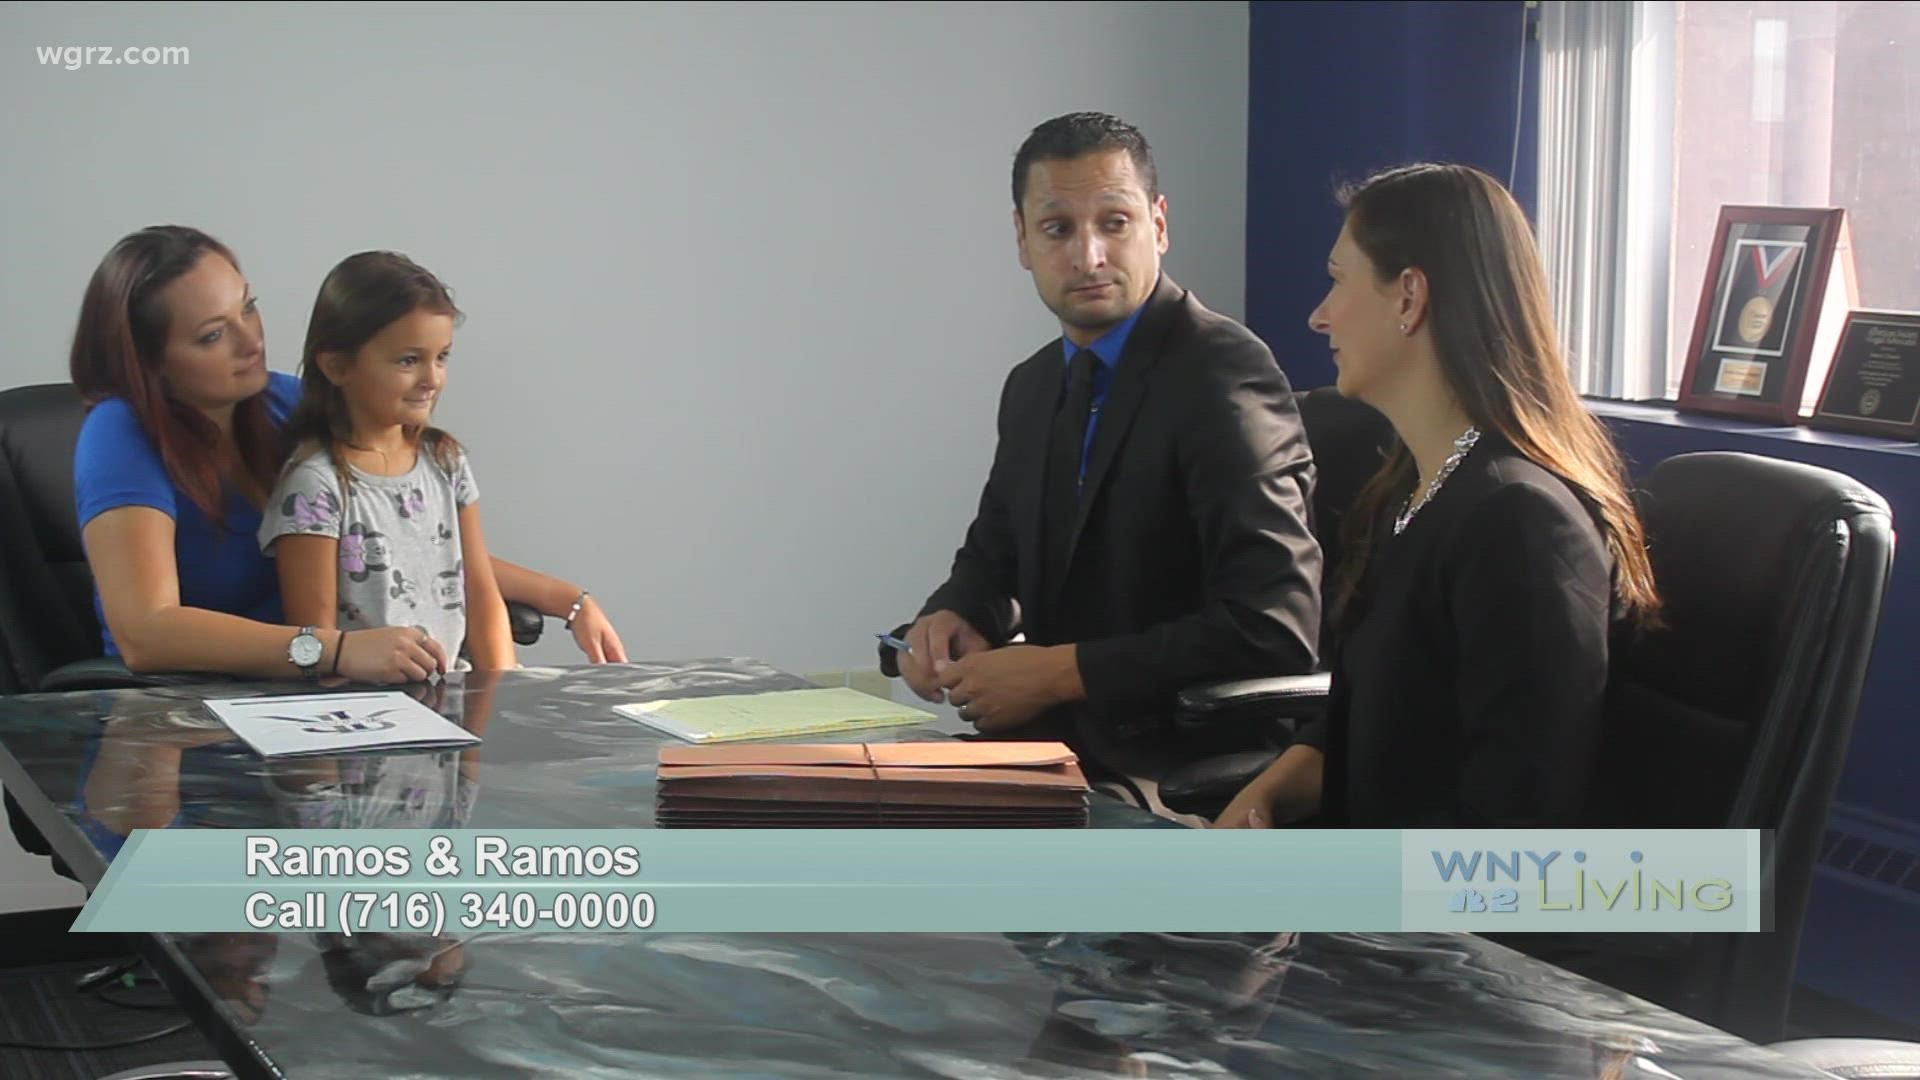 WNY Living - November 13 - Ramos & Ramos (THIS VIDEO IS SPONSORED BY RAMOS & RAMOS)